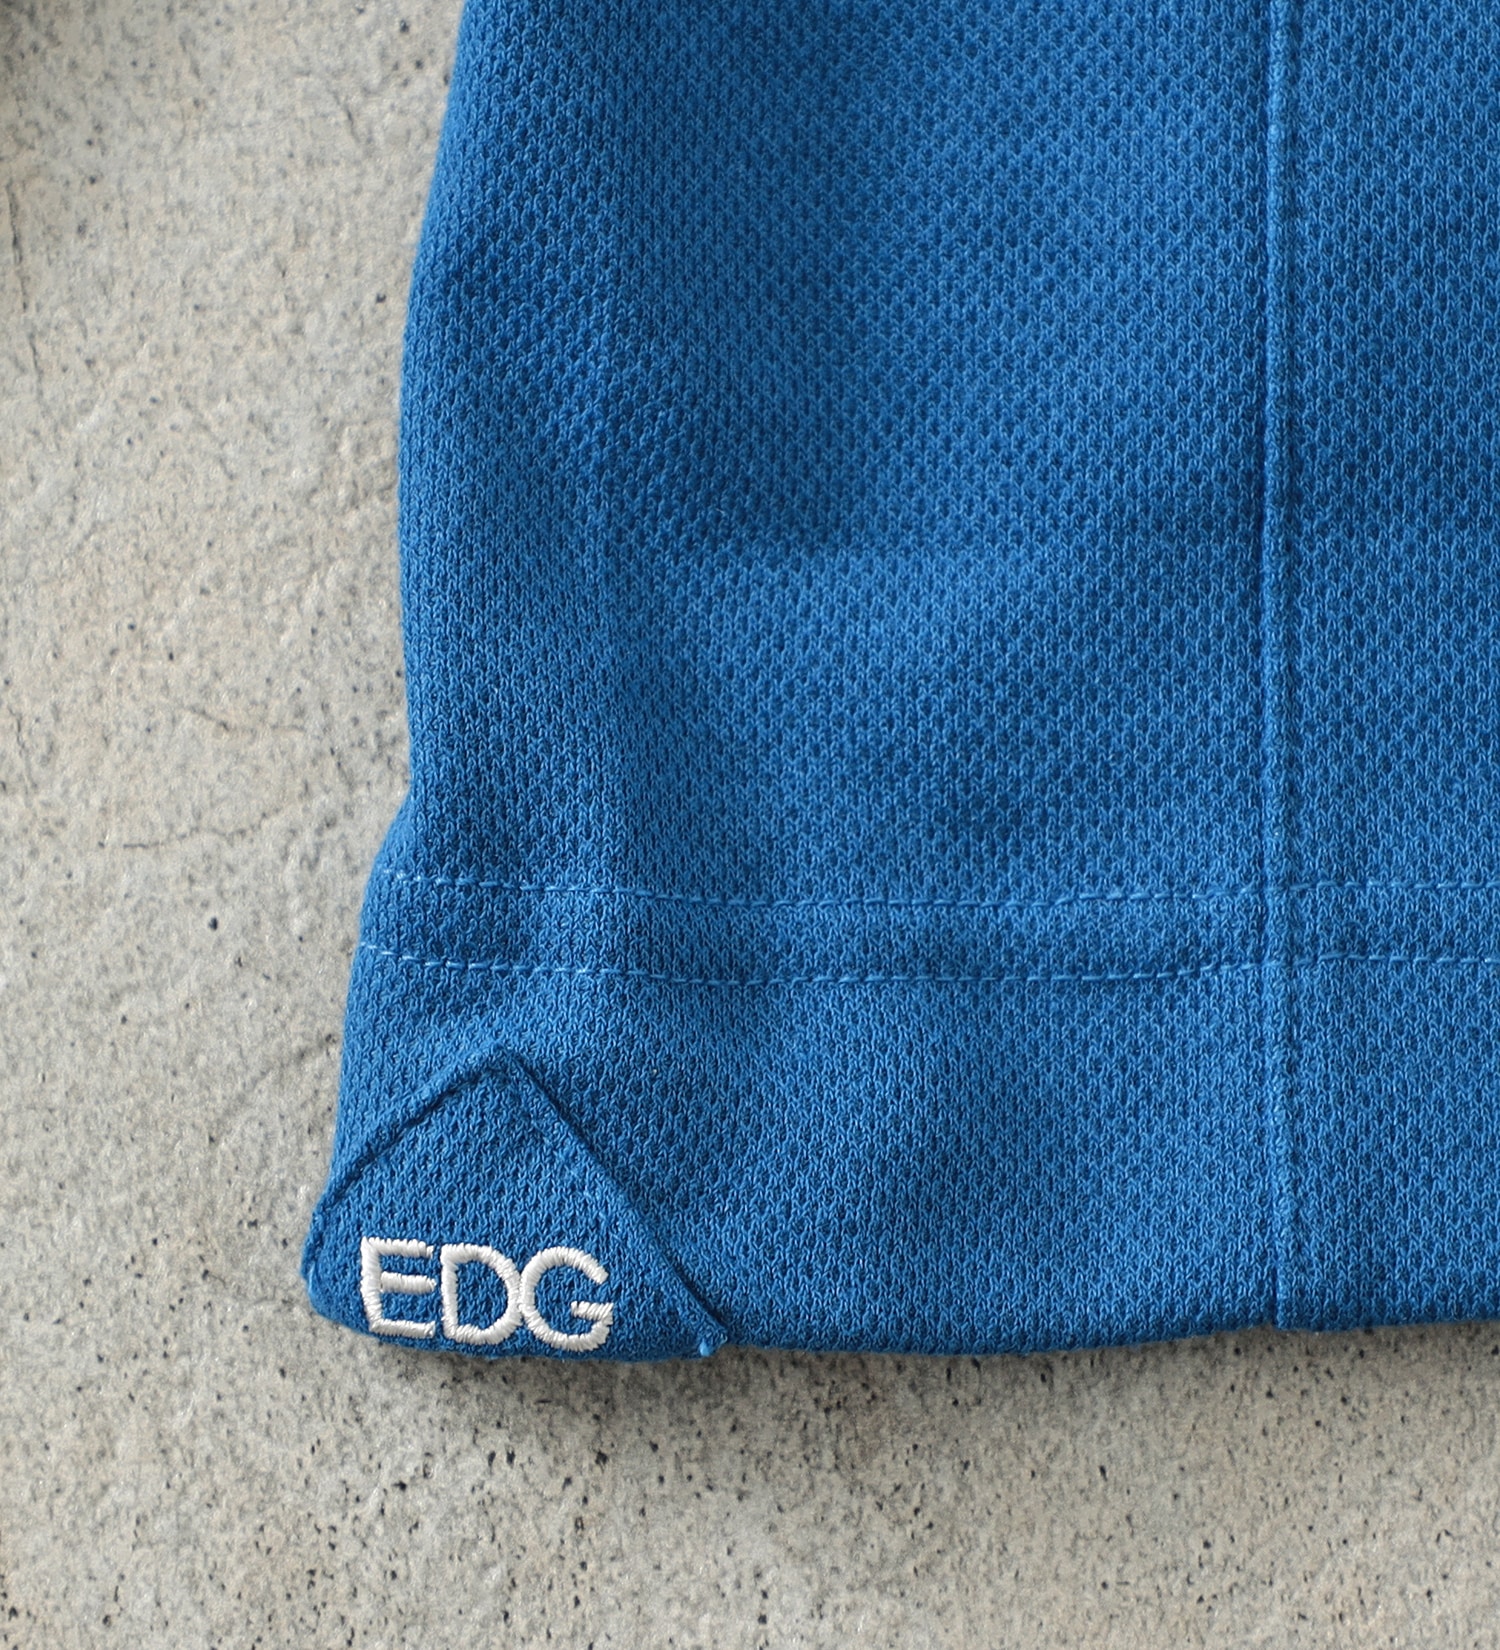 EDWIN(エドウイン)の【BLACKFRIDAY】EDWIN GOLF エドウイン ゴルフ ポロシャツ 長袖|トップス/ポロシャツ/メンズ|ブルー